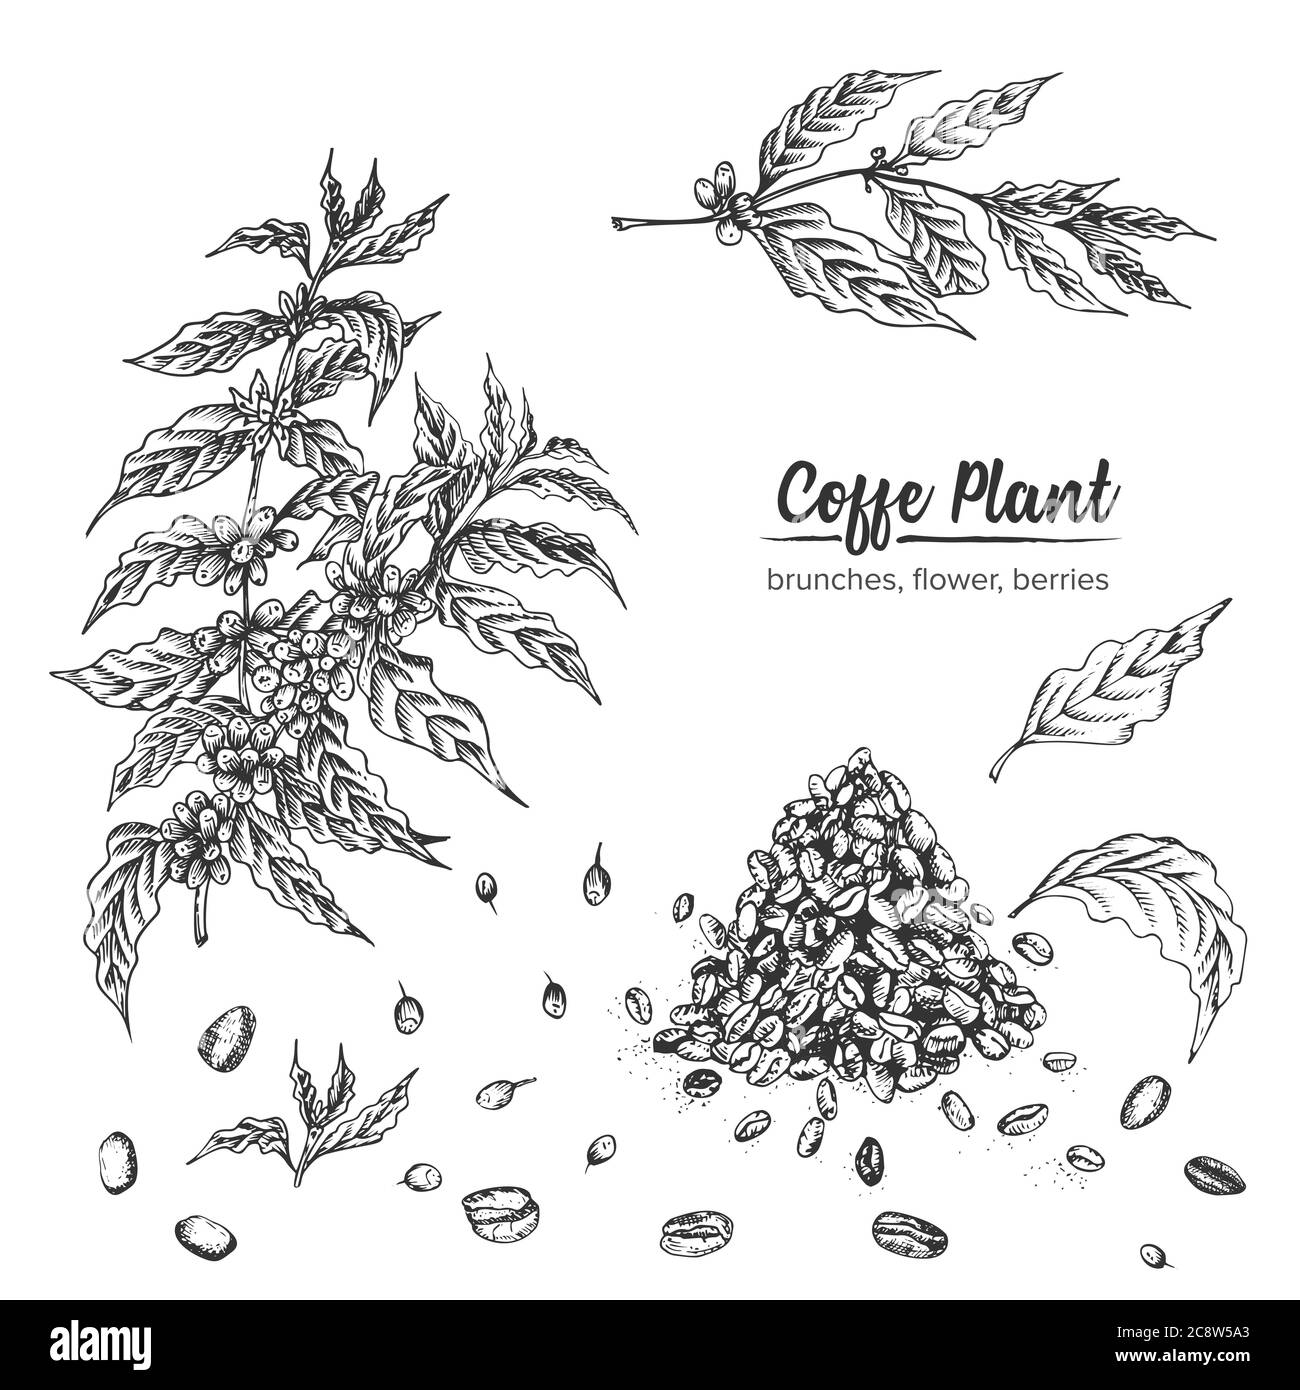 Réaliste esquisse d'encre botanique plante de café arabica, brunches, fleur, baies, feuilles, haricots rôtis isolés sur fond blanc, collection d'herbes Illustration de Vecteur